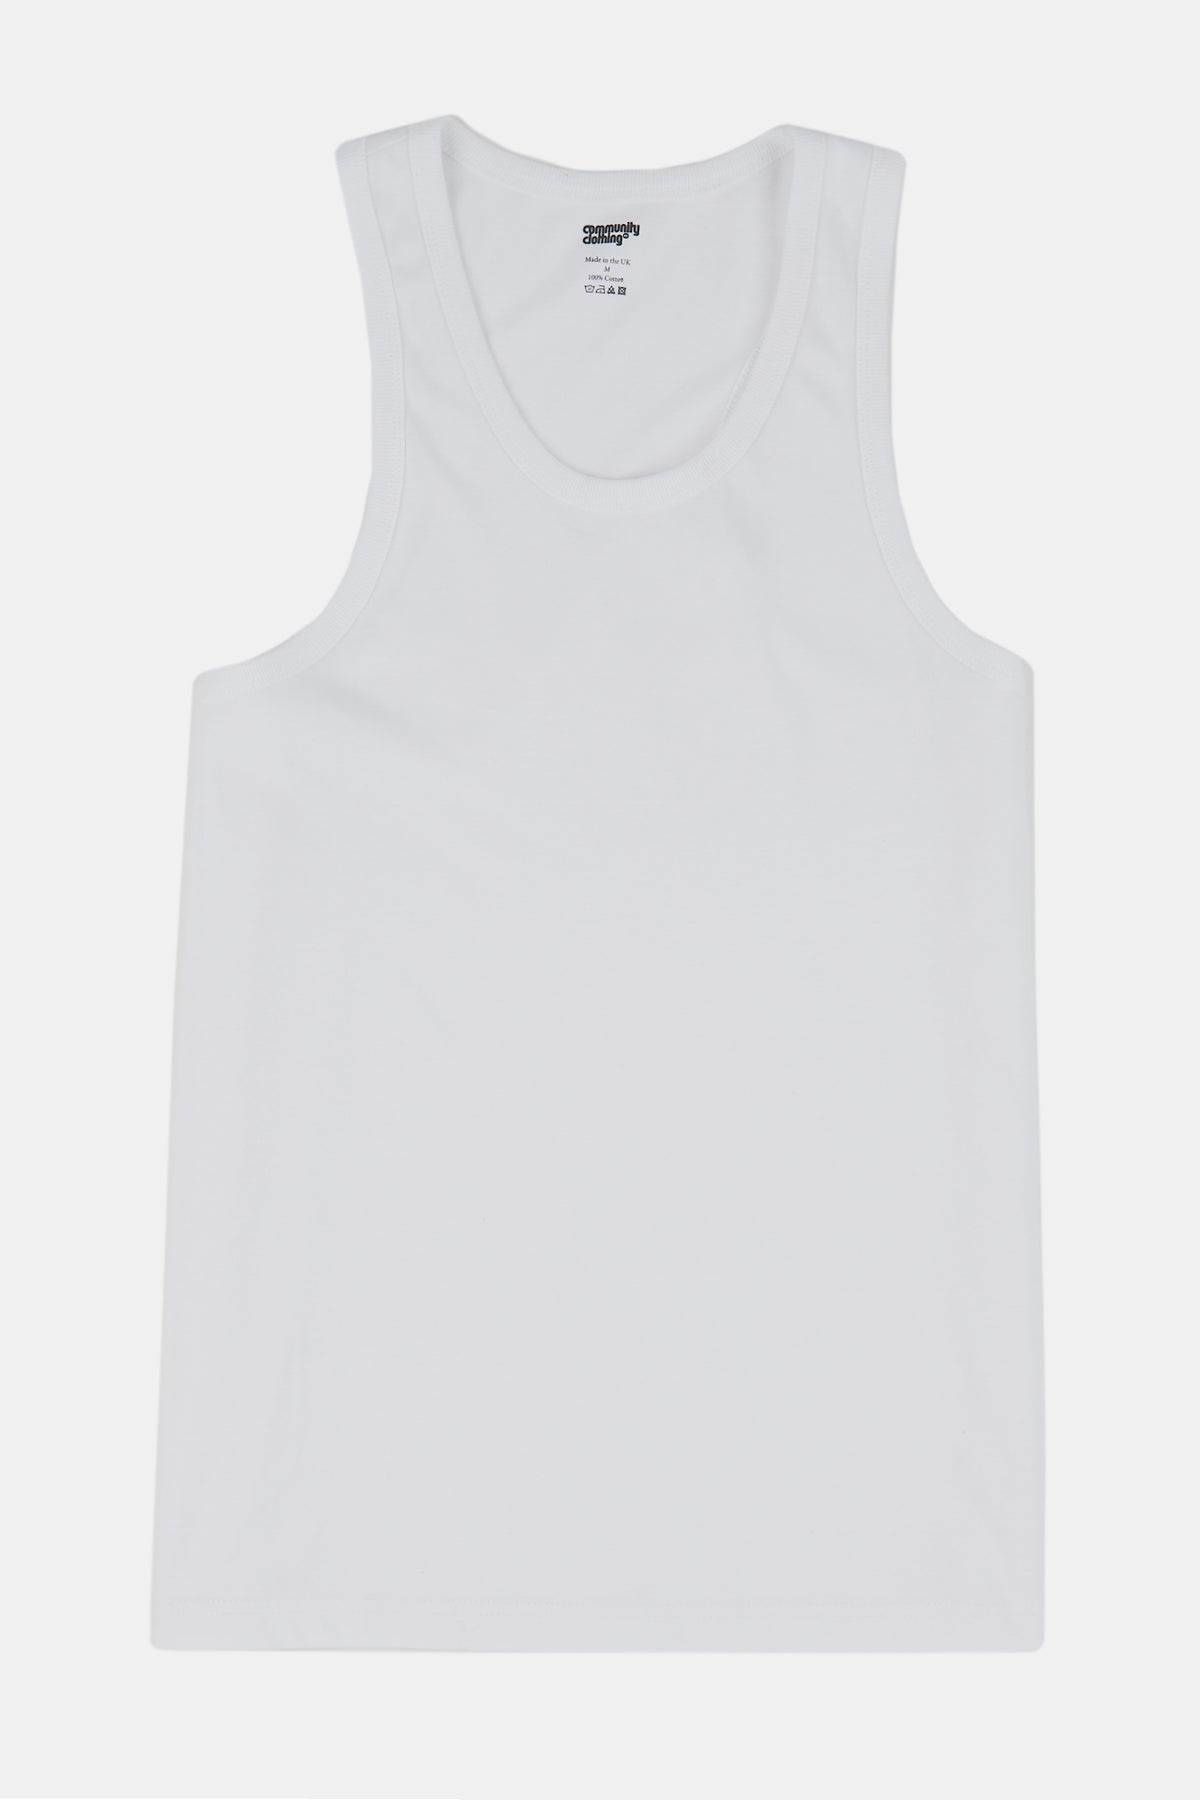 
            Flatlay product shot of women&#39;s racer back vest in white